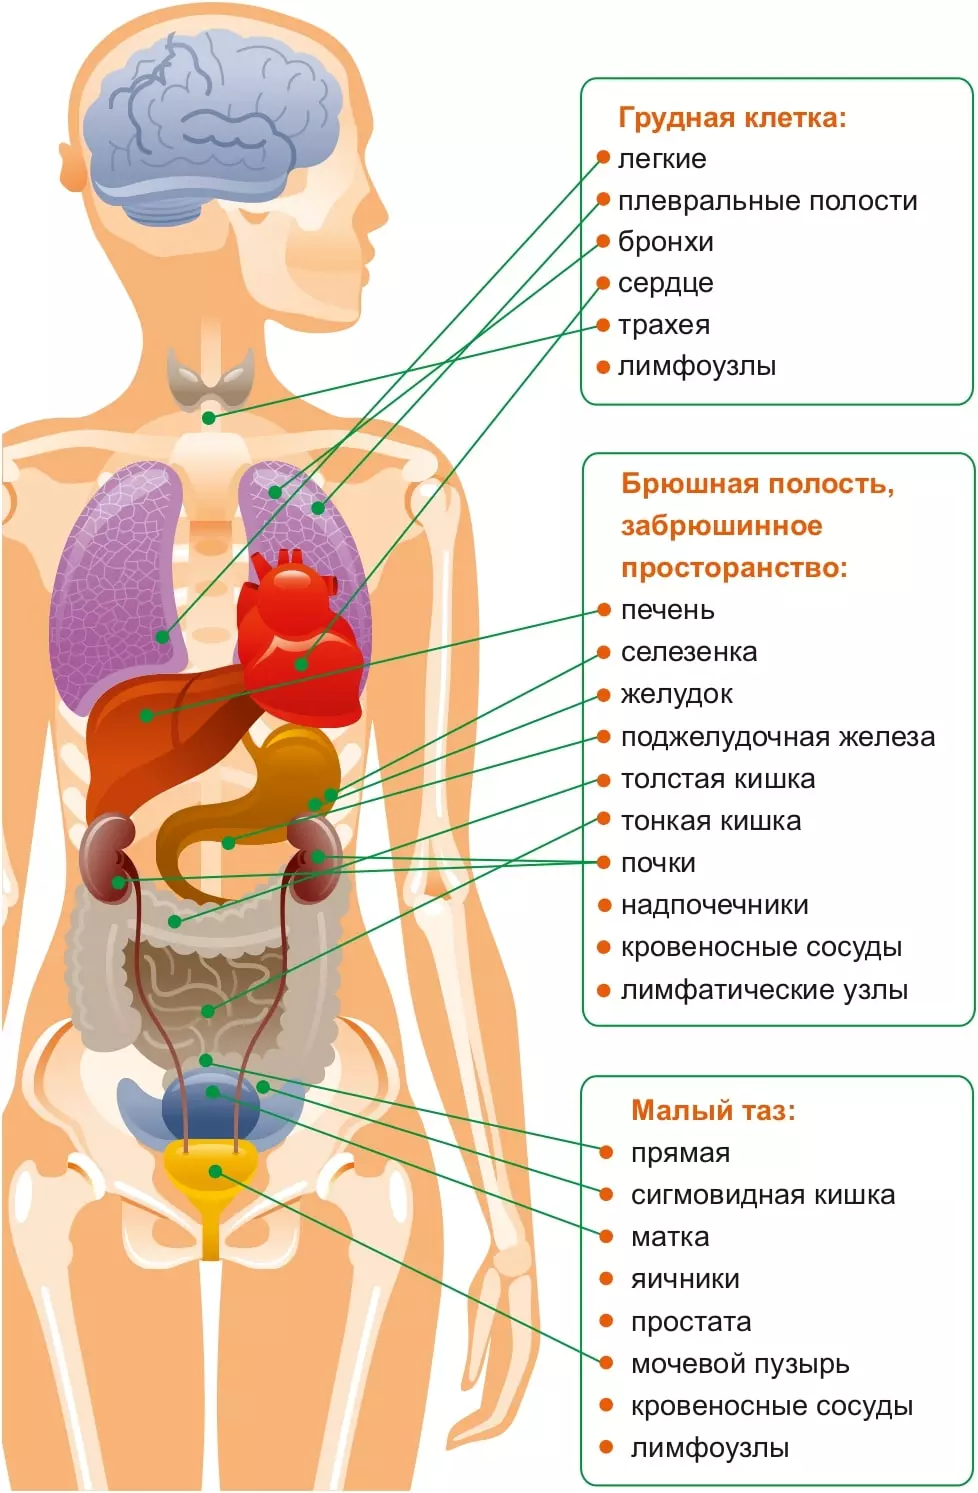 Внутренние органы женщины картинка. Схема органов брюшной полости женщины. Внутренние органы брюшной полости человека. Расположение внутренних органов в полости живота.